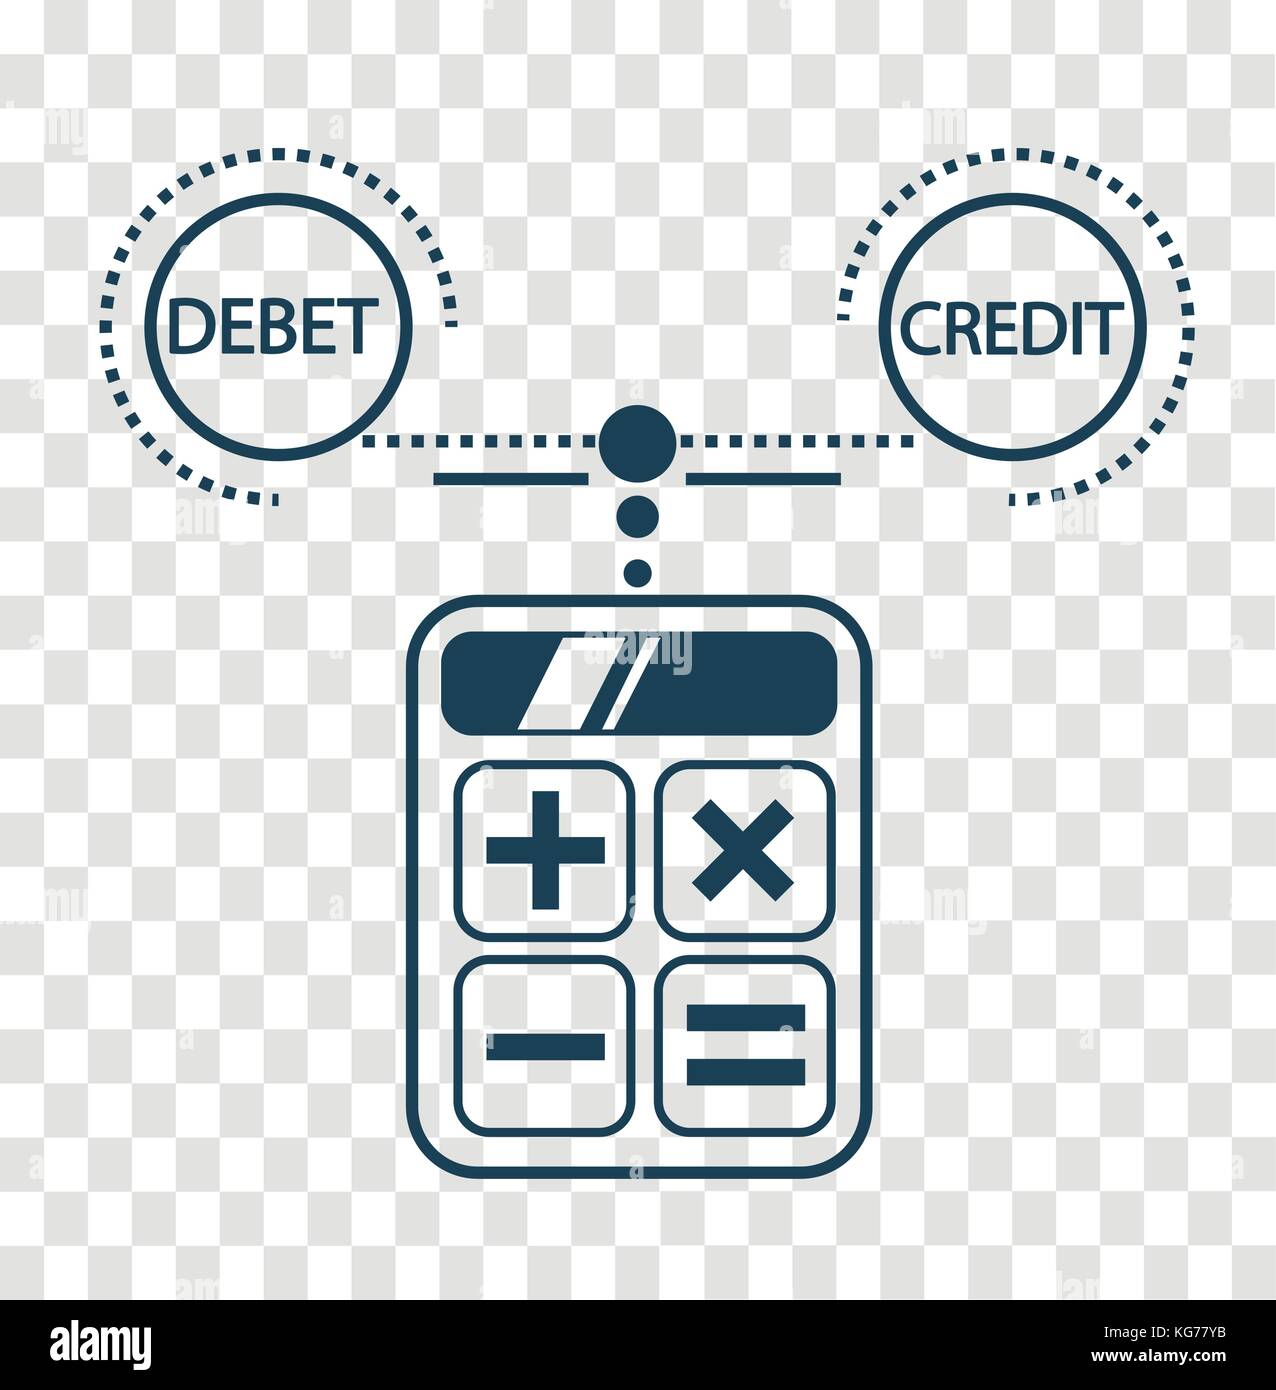 Concepto de cálculo de crédito y débito, balance, la contabilidad en la  forma de calcular una calculadora. Icono, silueta en el estilo lineal  Imagen Vector de stock - Alamy